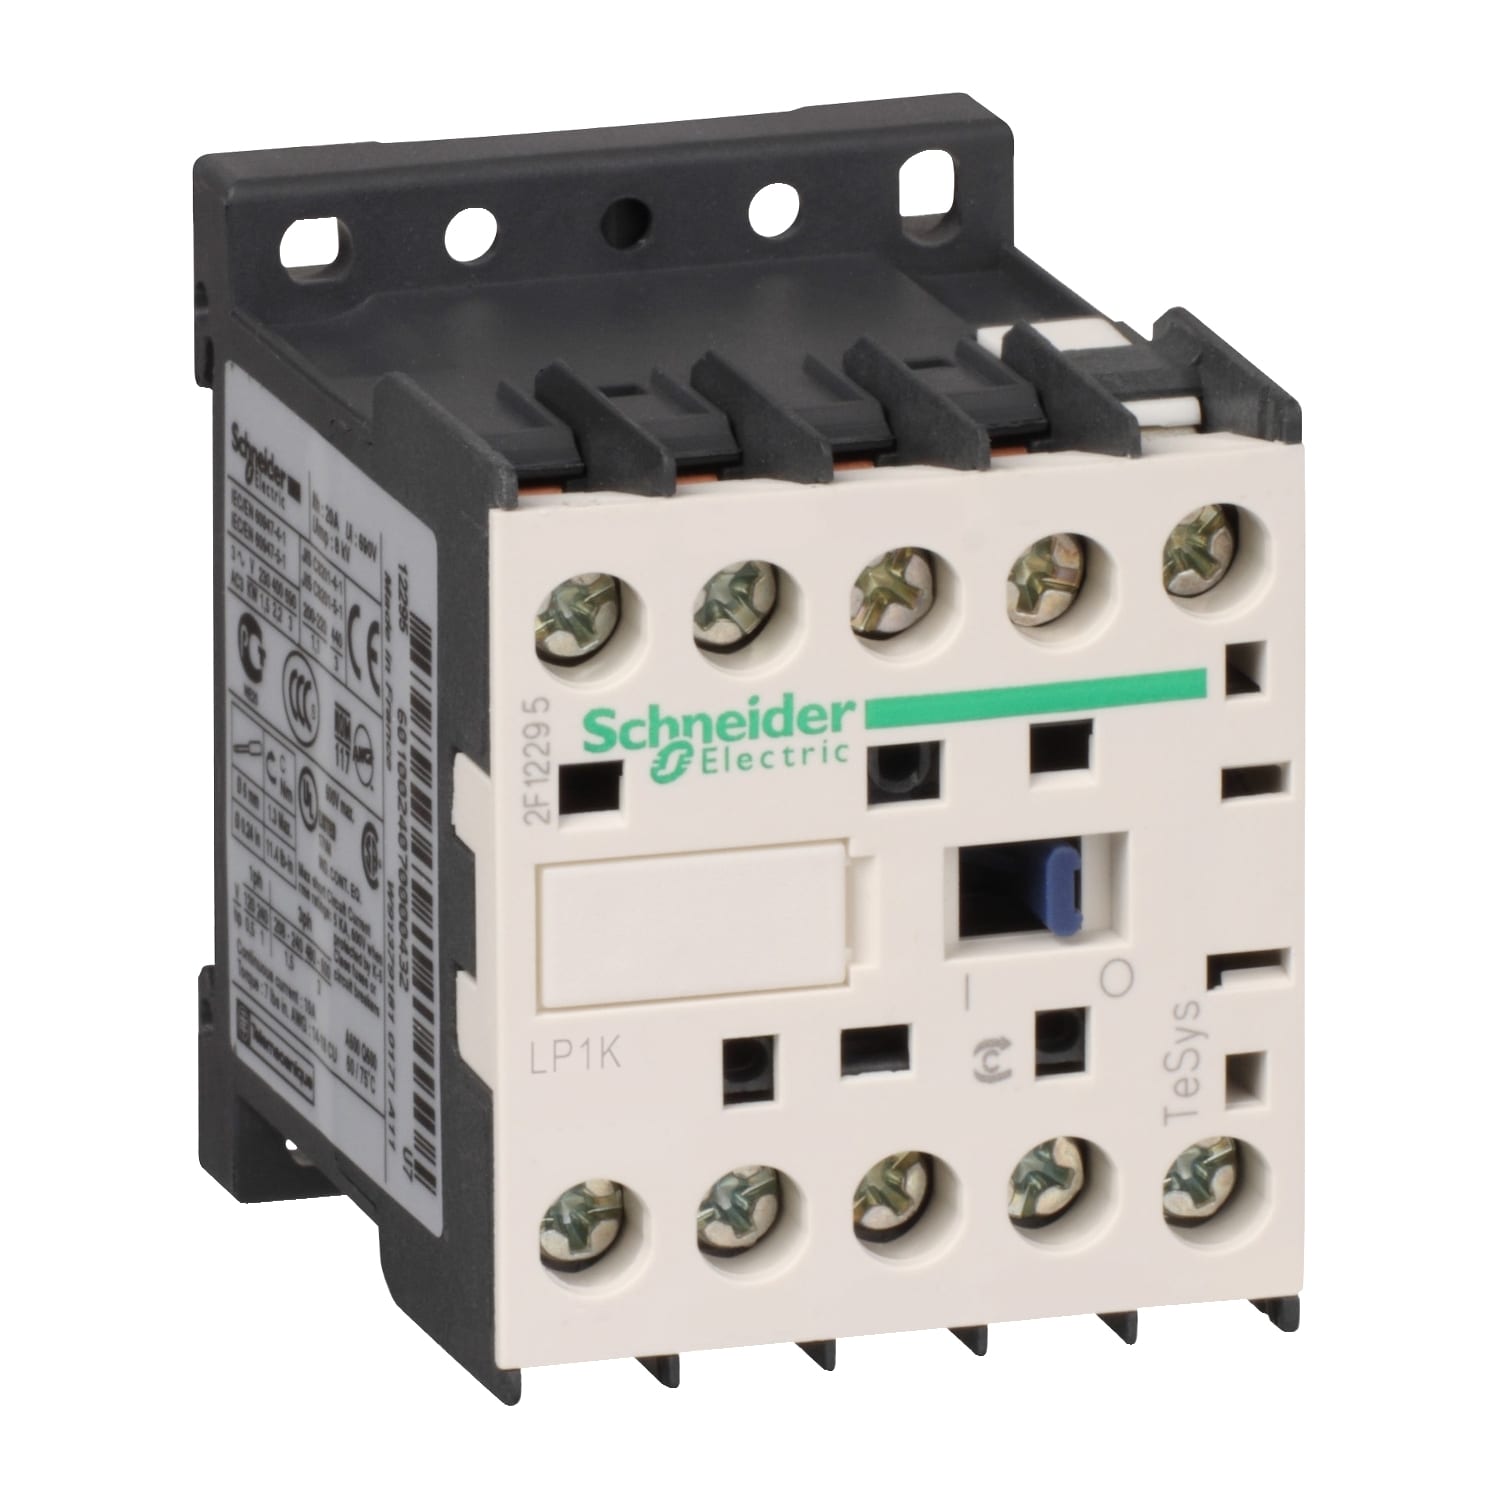 Schneider Electric - TeSys LP1K - contacteur - 3P - AC-3 440V - 6A - bobine 48Vcc